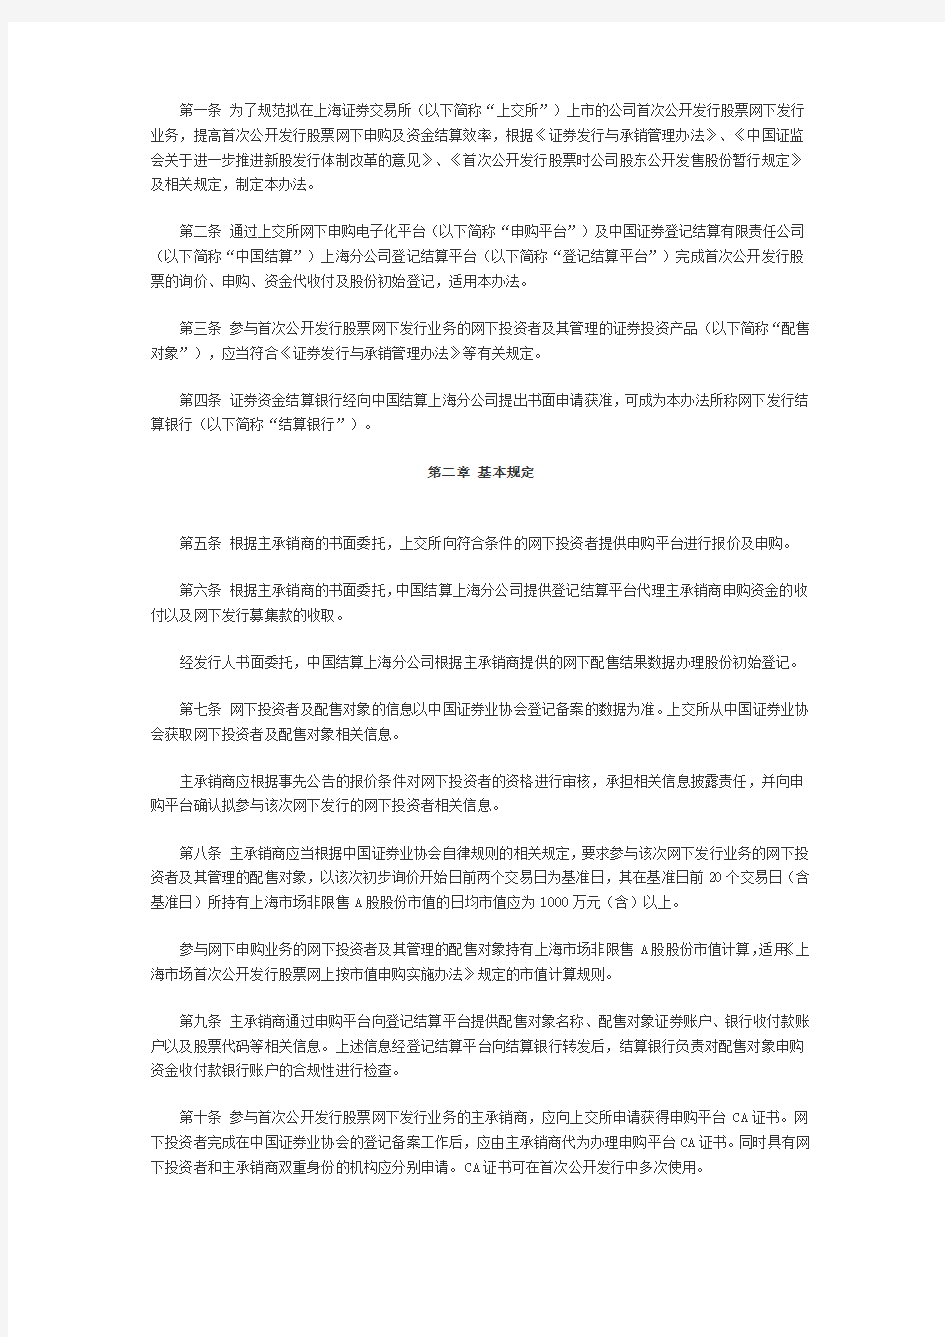 关于修改《上海市场首次公开发行股票网下发行实施办法》 …